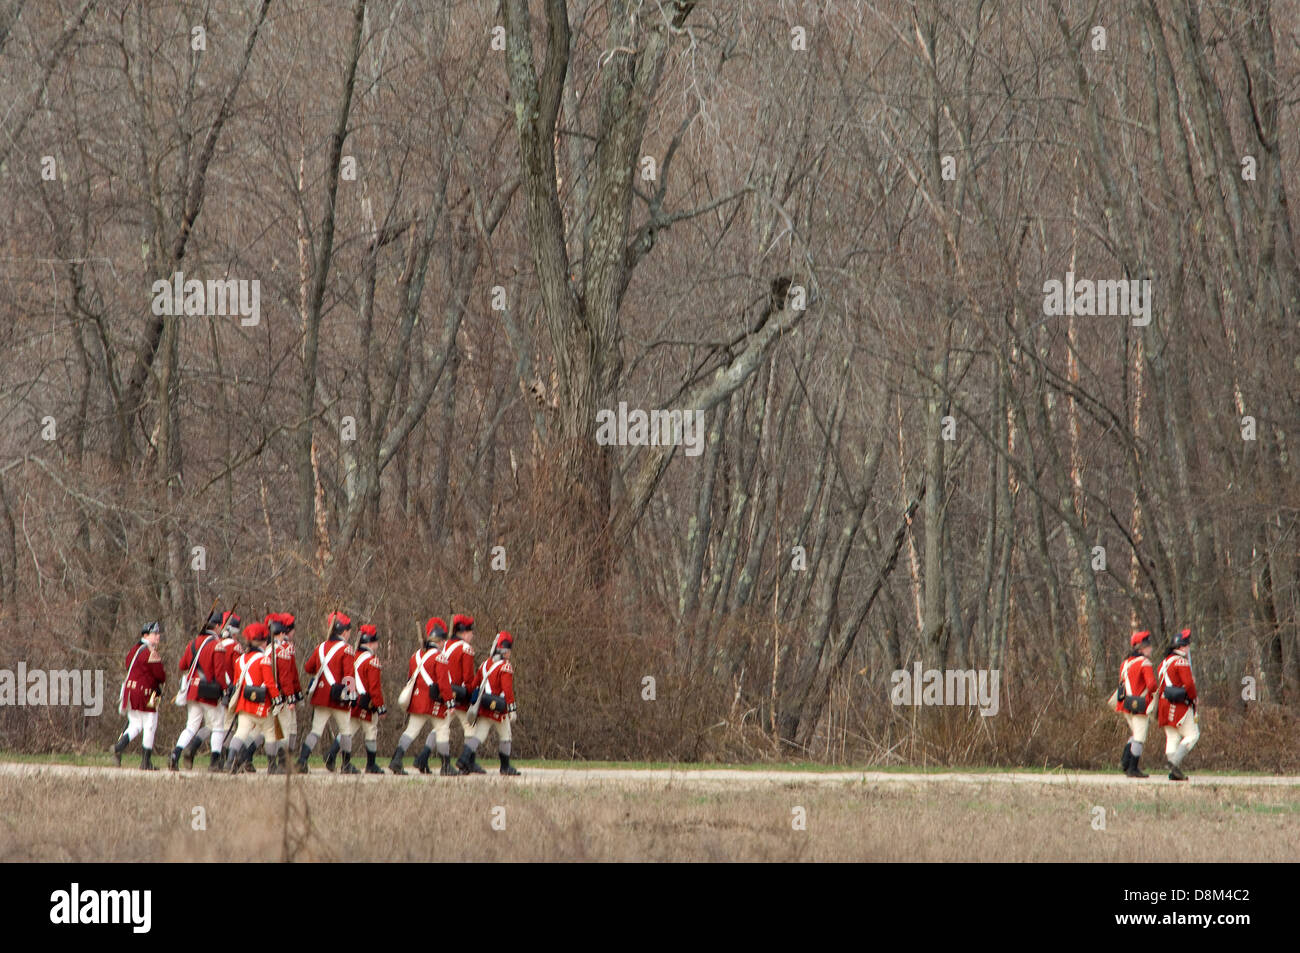 Casaca roja británica recreacions marchando para acoplar los minutemen colonial en la batalla de Concord. Fotografía Digital. Foto de stock